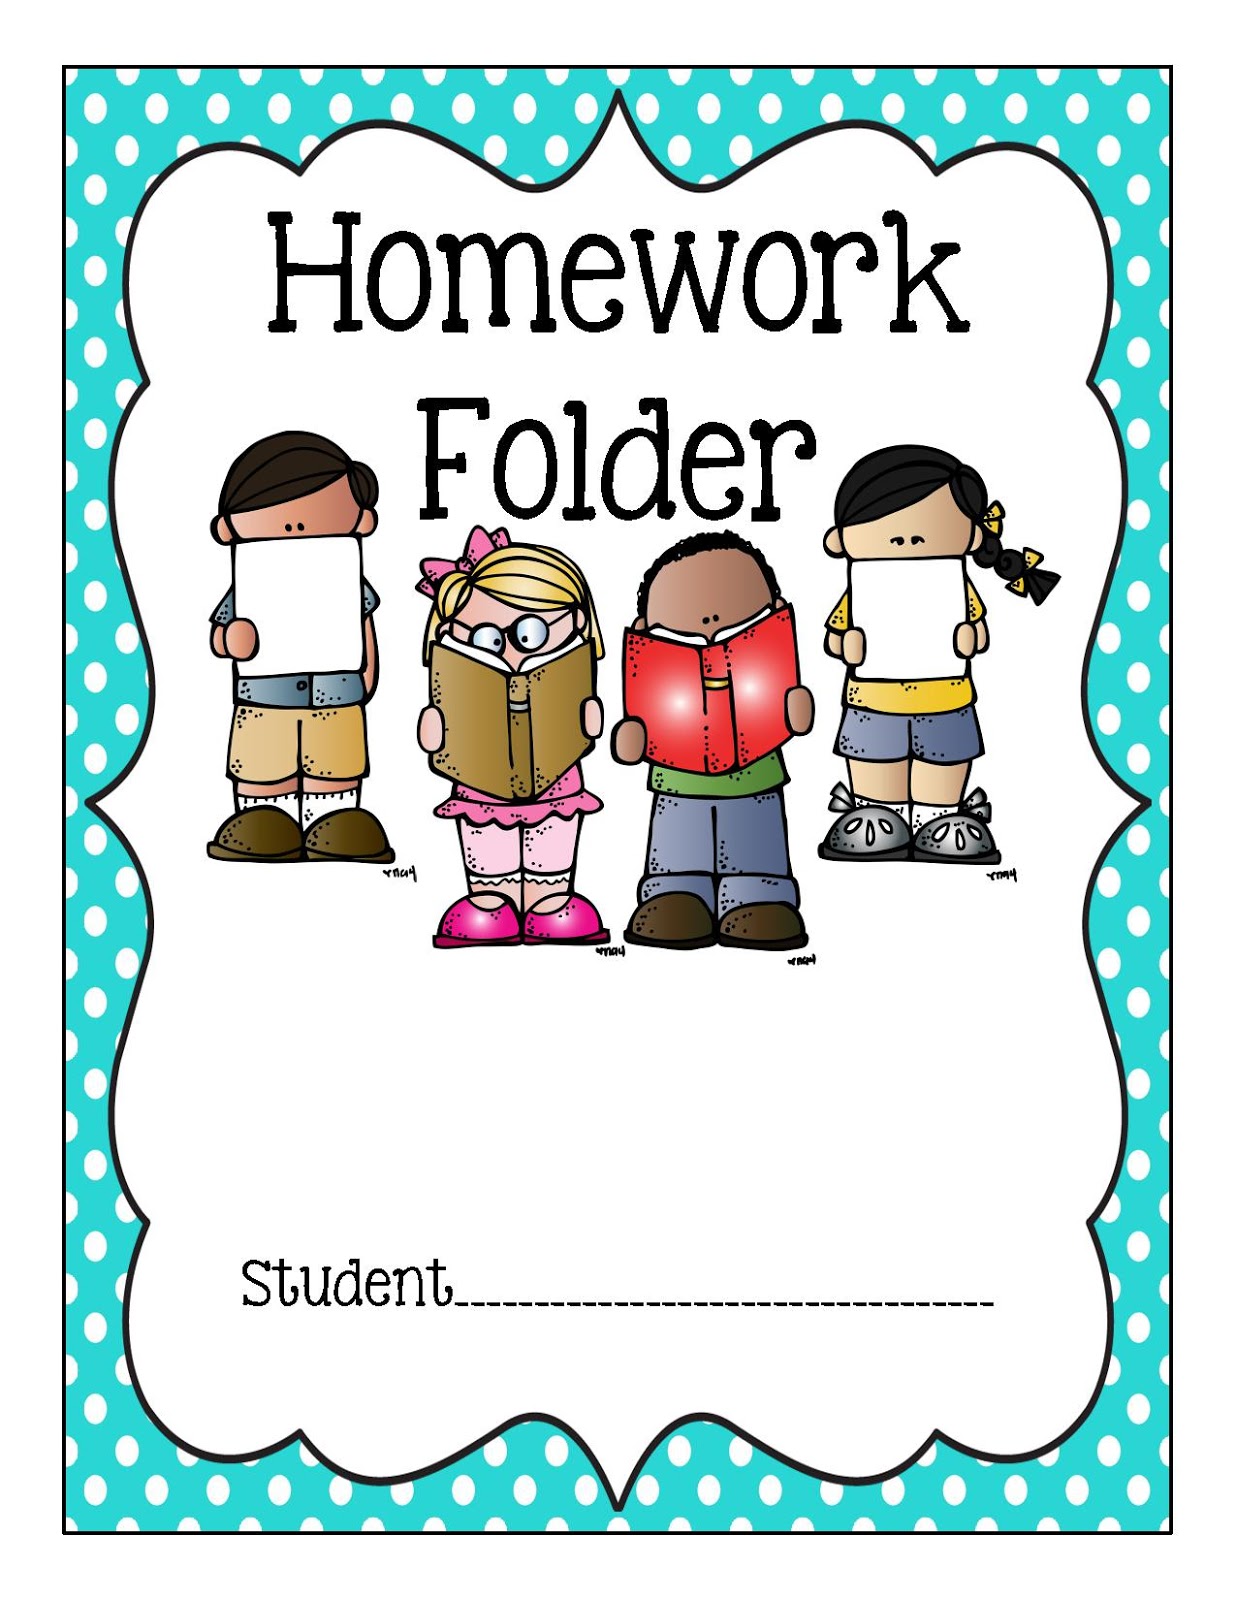 Binder clipart homework, Binder homework Transparent FREE for download